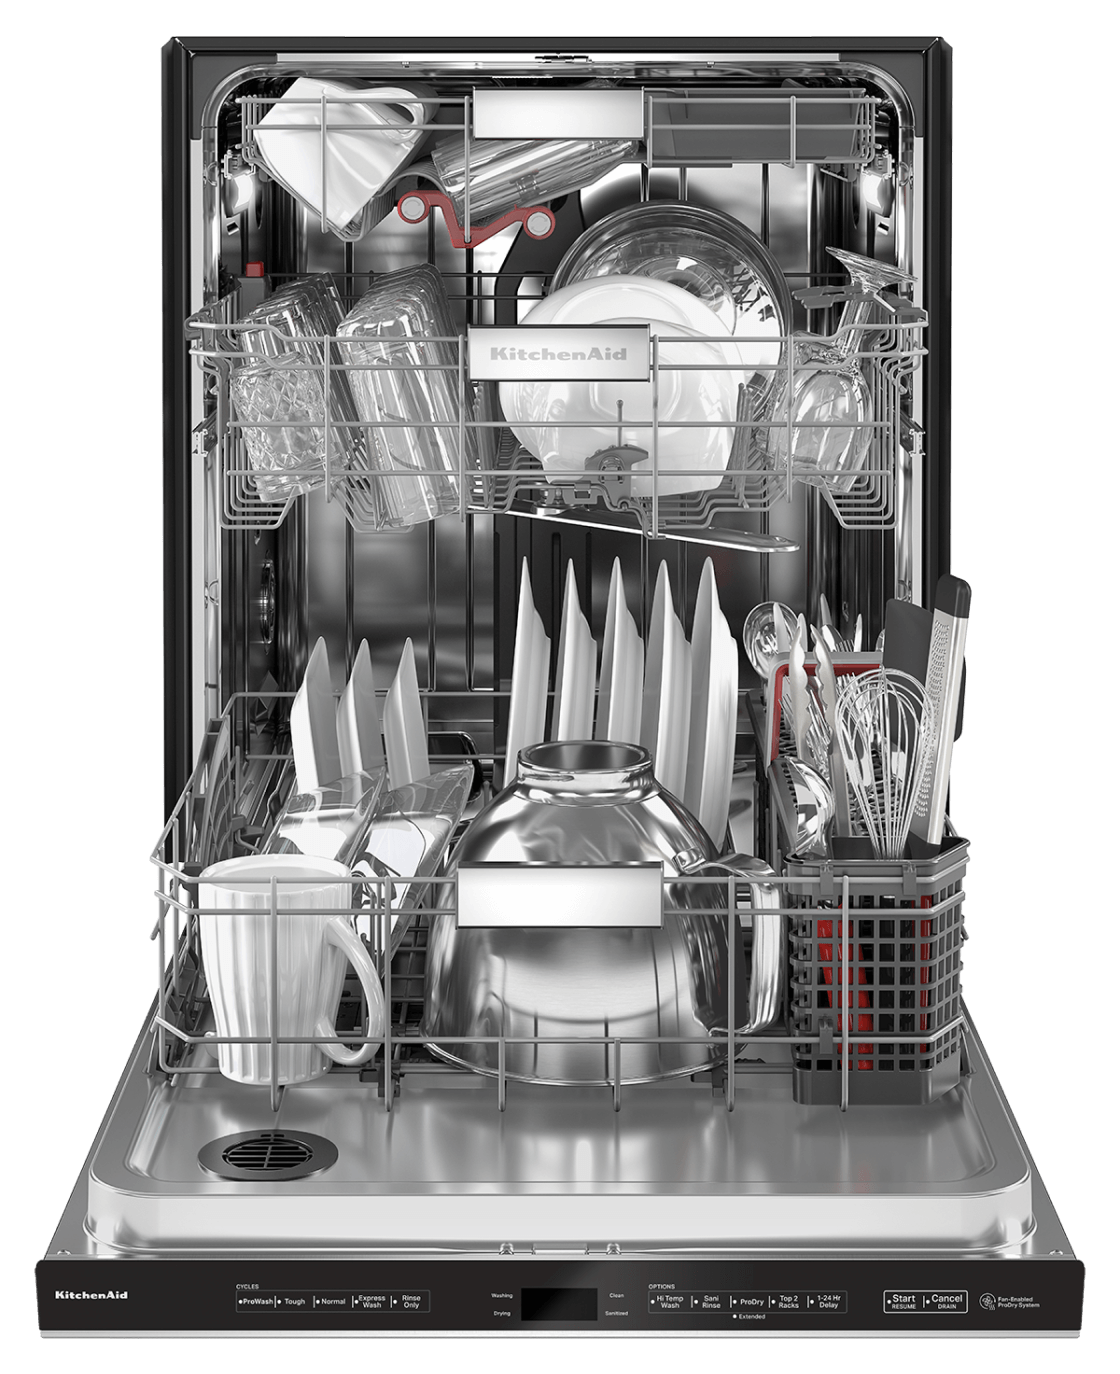 Dishwashers Designed To Master Kitchen